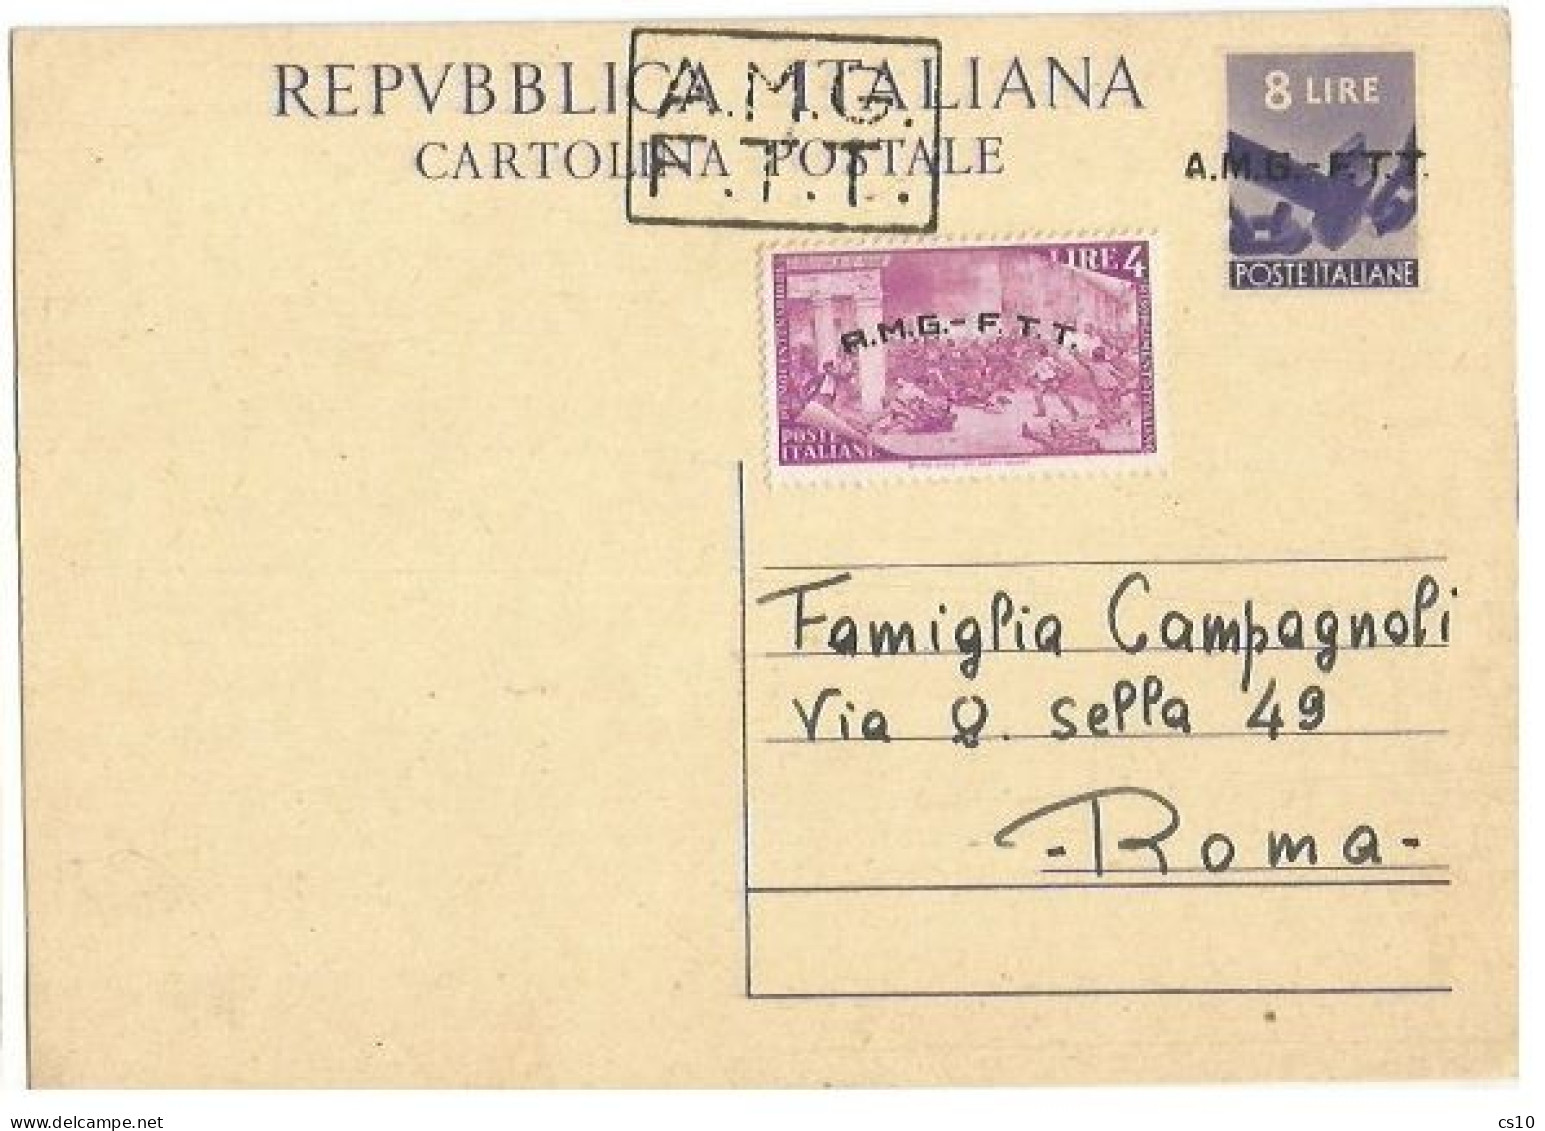 Trieste "A" AMG-FTT 1947 Cart.Postale Democratica L.8 #C2A Soprast.A+B + Risorgimento L.4 Nuova Intestata NON VIAGGIATA - Marcofilía